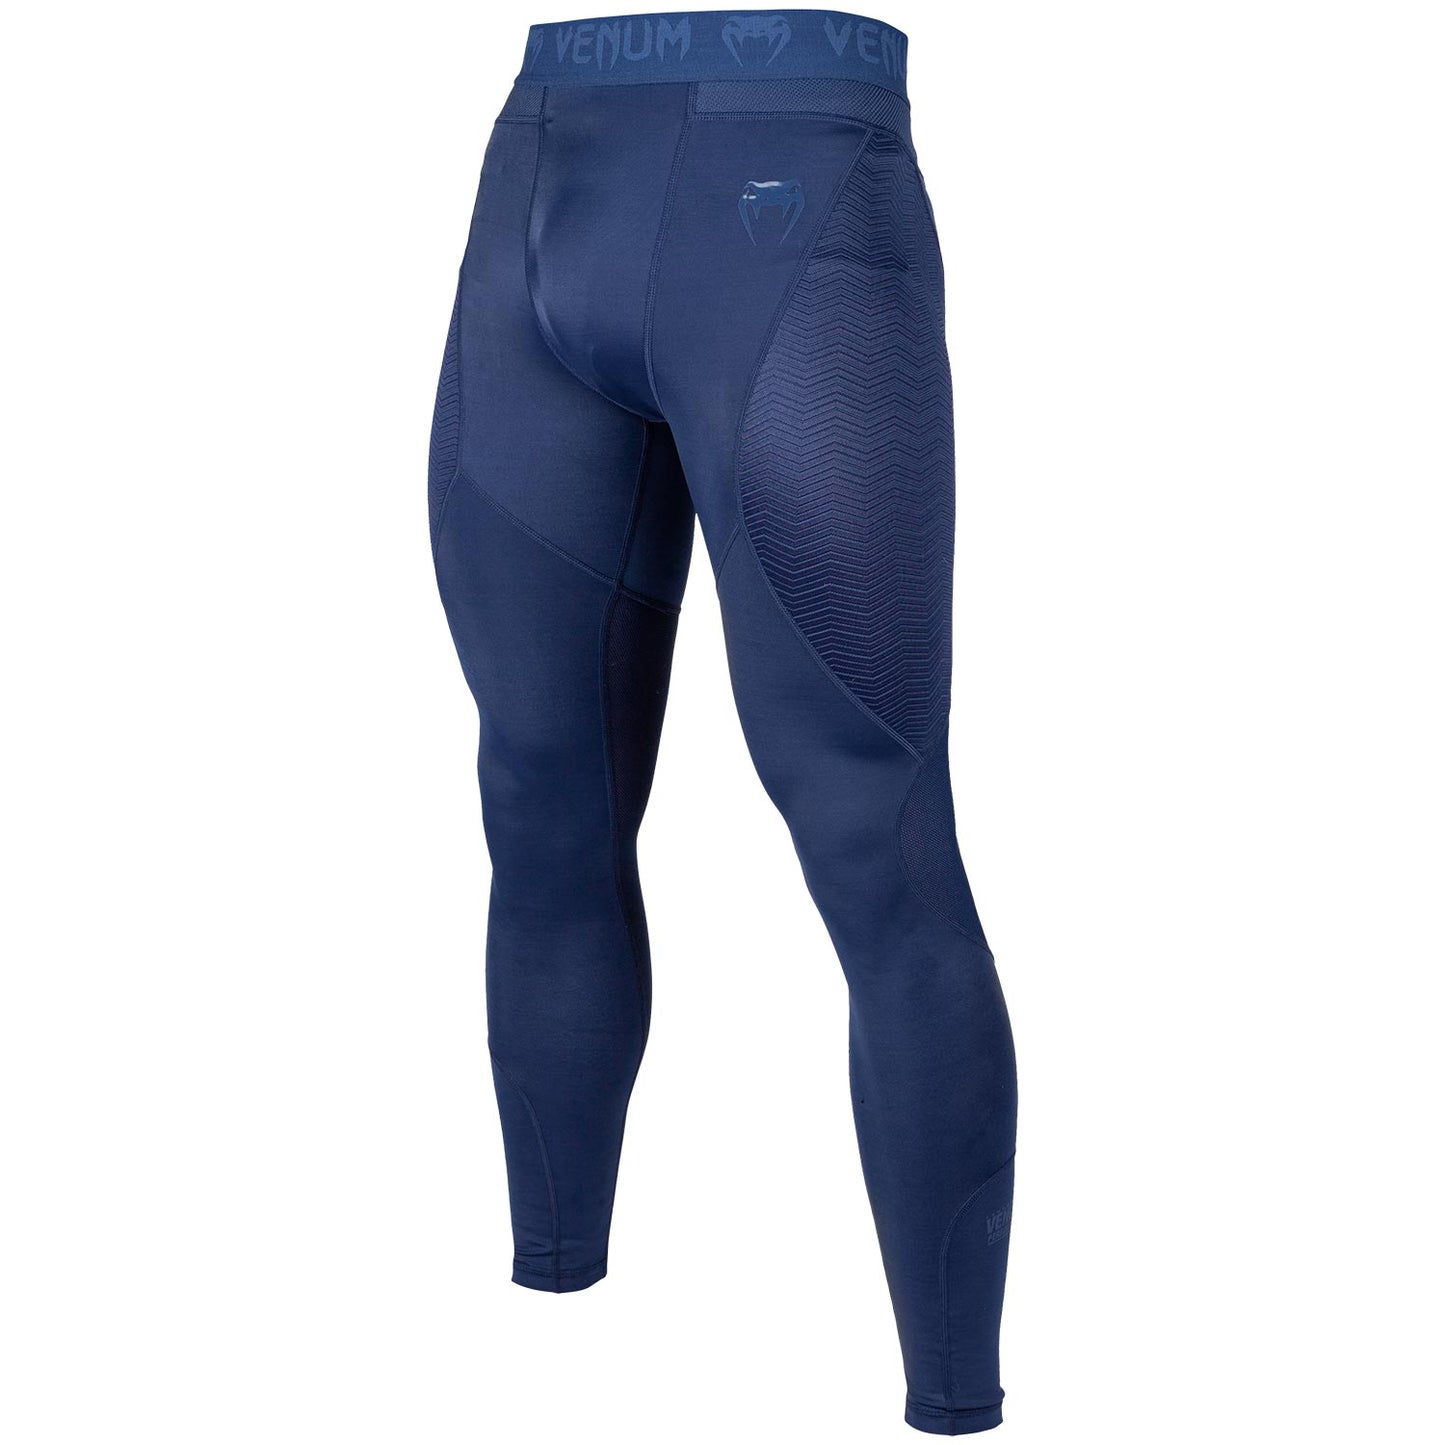 Pantalones de compresión Venum G-Fit - Marino